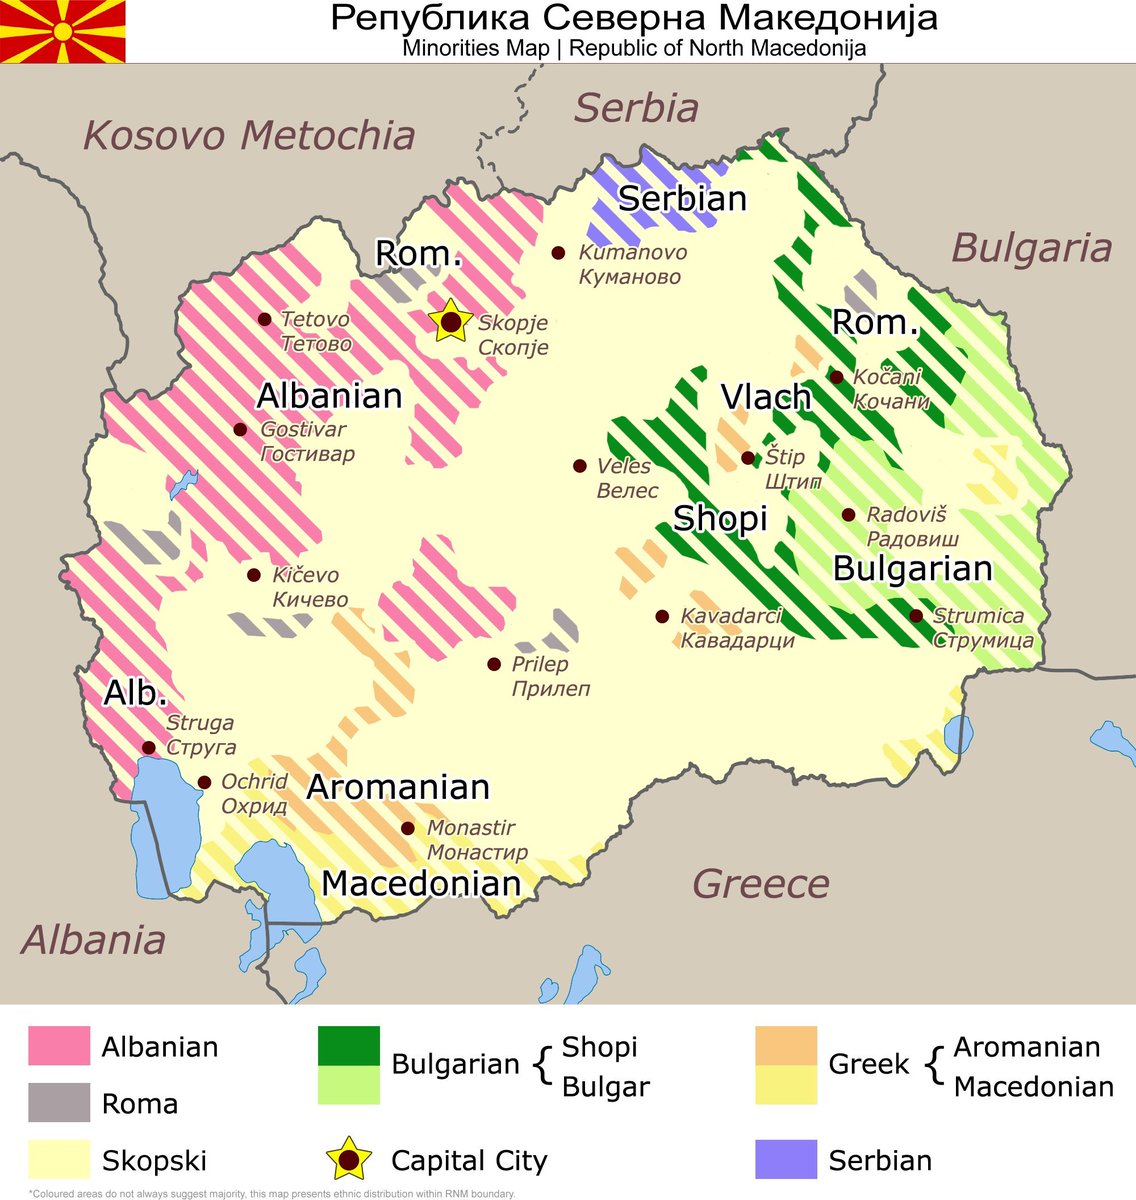 Σε 15 χρόνια η εθνική σύνθεση των Σκοπίων θα έχει ως:

Εθνικότητα:
42-48 % Σκοπιανή
34-36 % Αλβανική
16-24 % άλλο

Γλώσσα
48-53 % Σκοπιανά
34-36 % Αλβανικά
11-18 % άλλο

Θρησκεία:
55-57 % Χριστιανισμός
34-40 % Ισλαμισμός
3-11 % άλλο

#NorthMacedonia #Skopje 🇲🇰